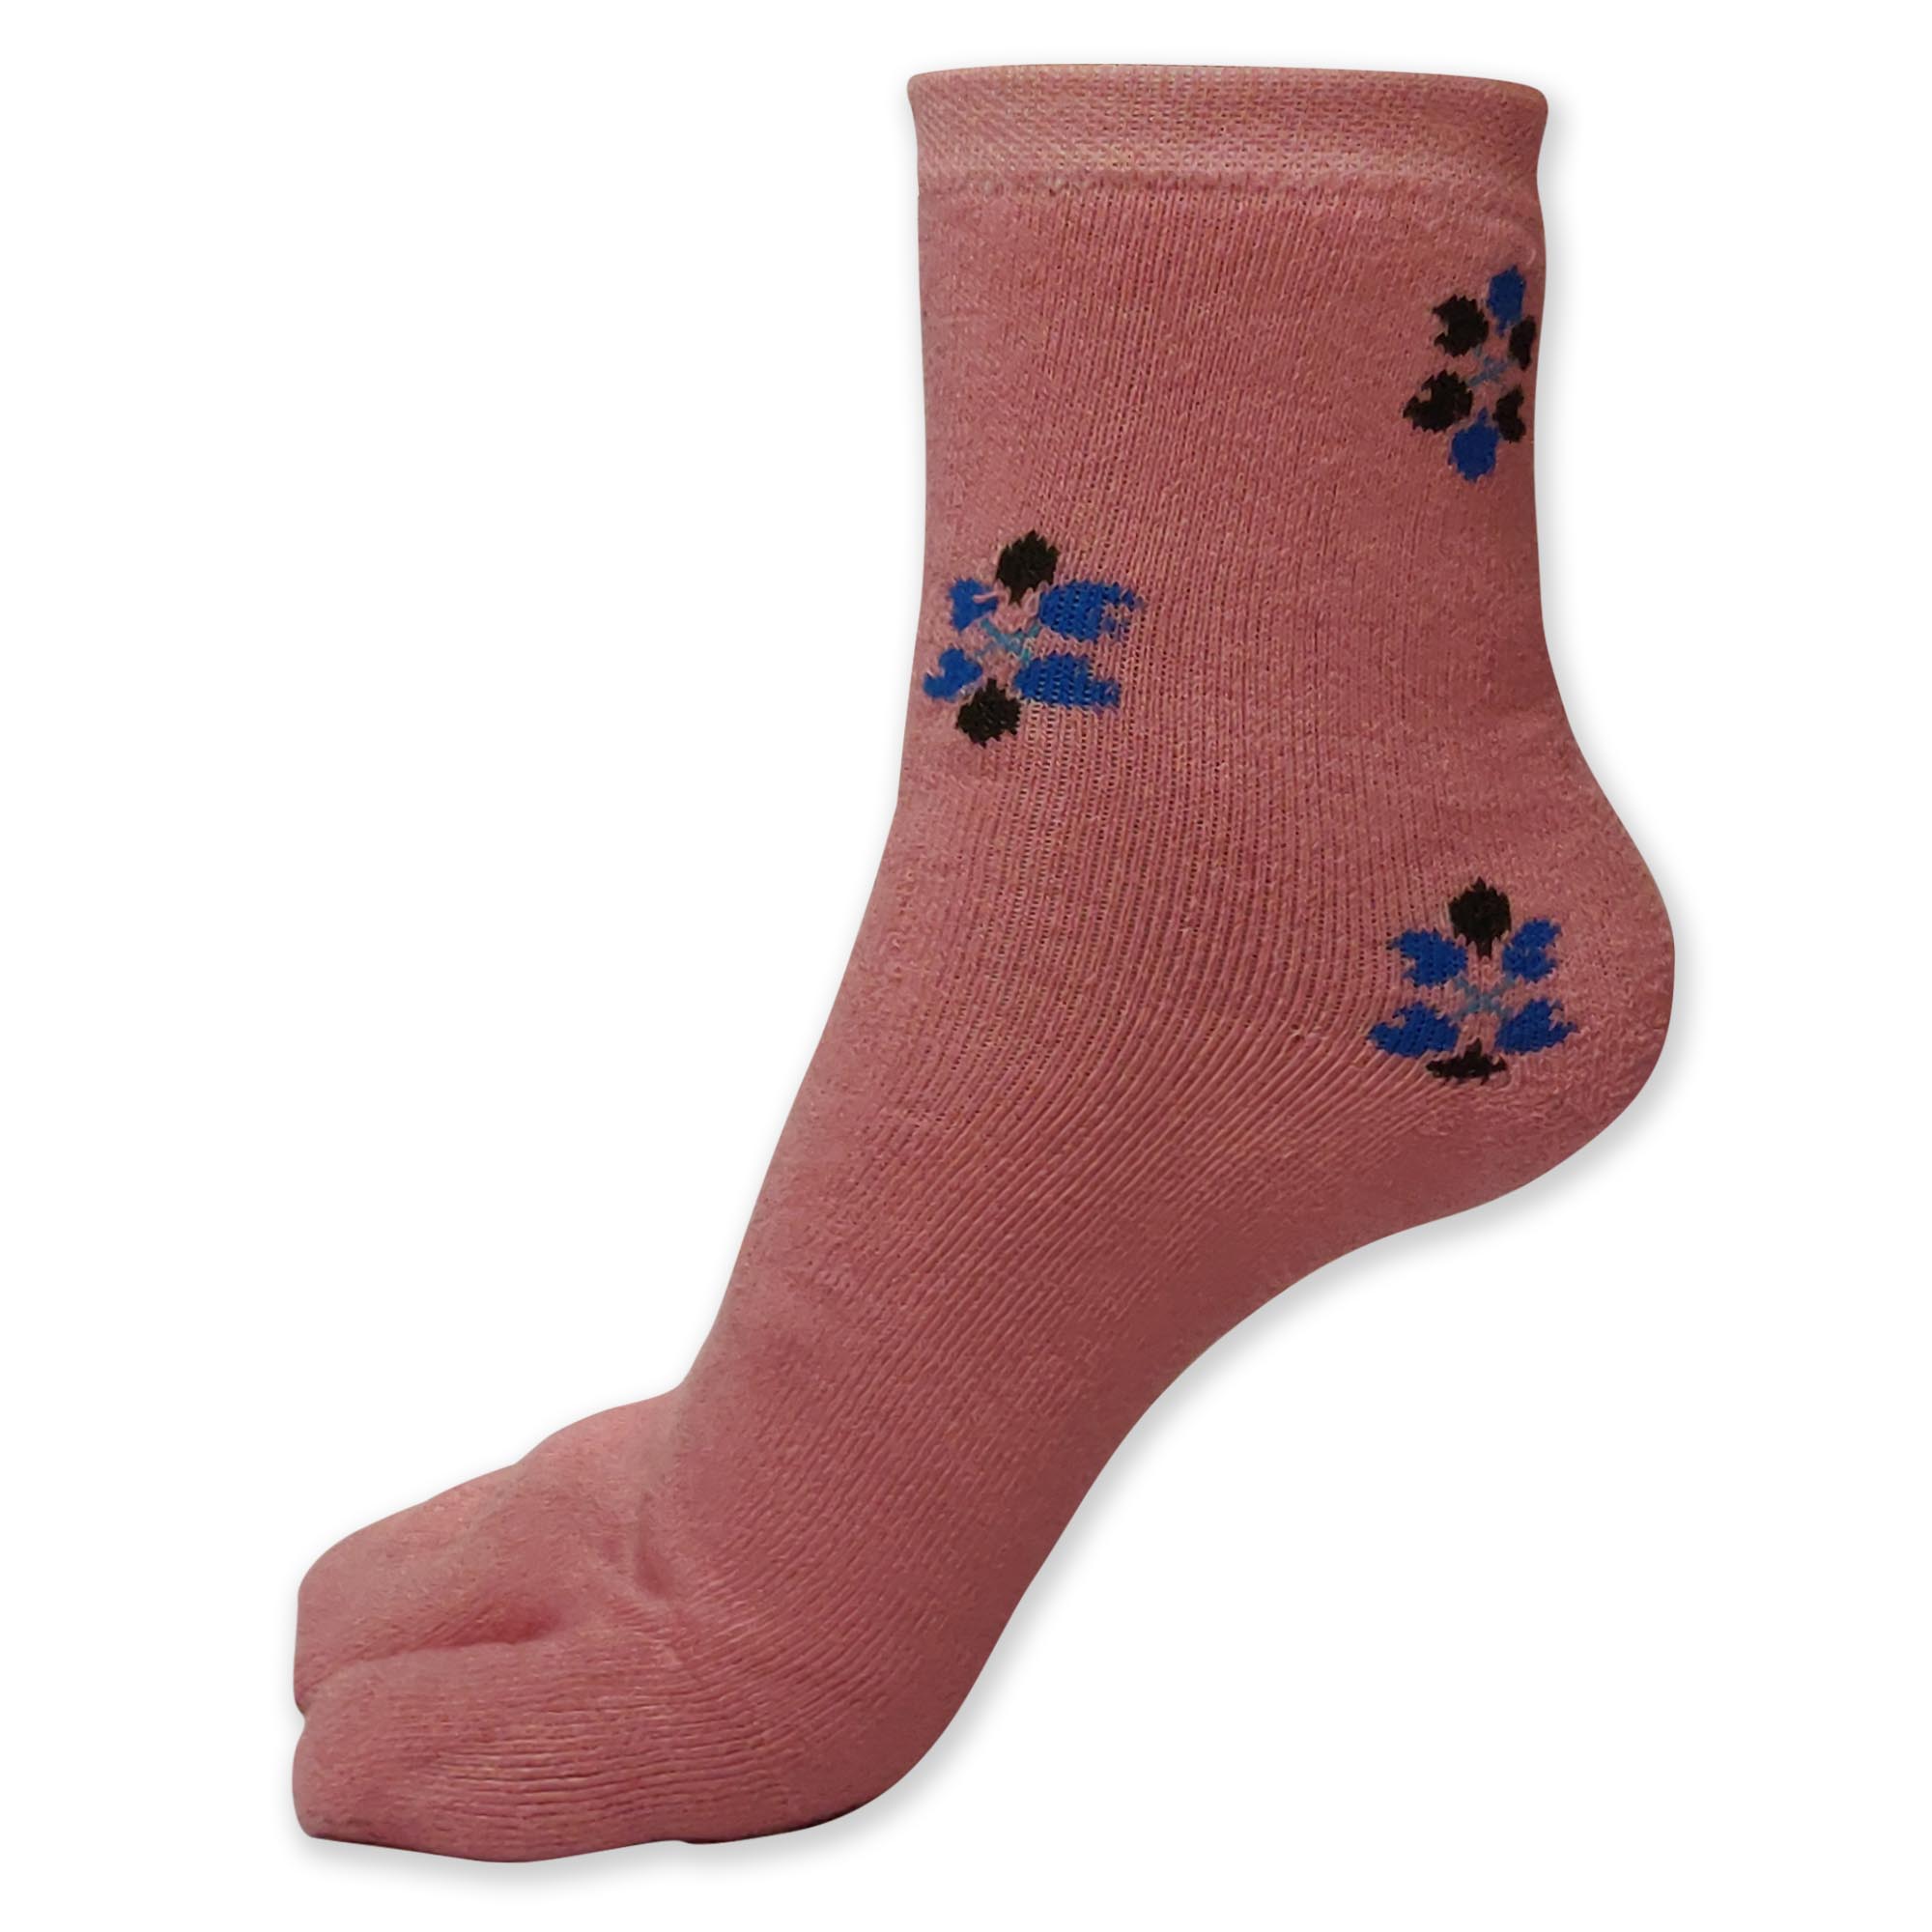 Women's Socks / Pink